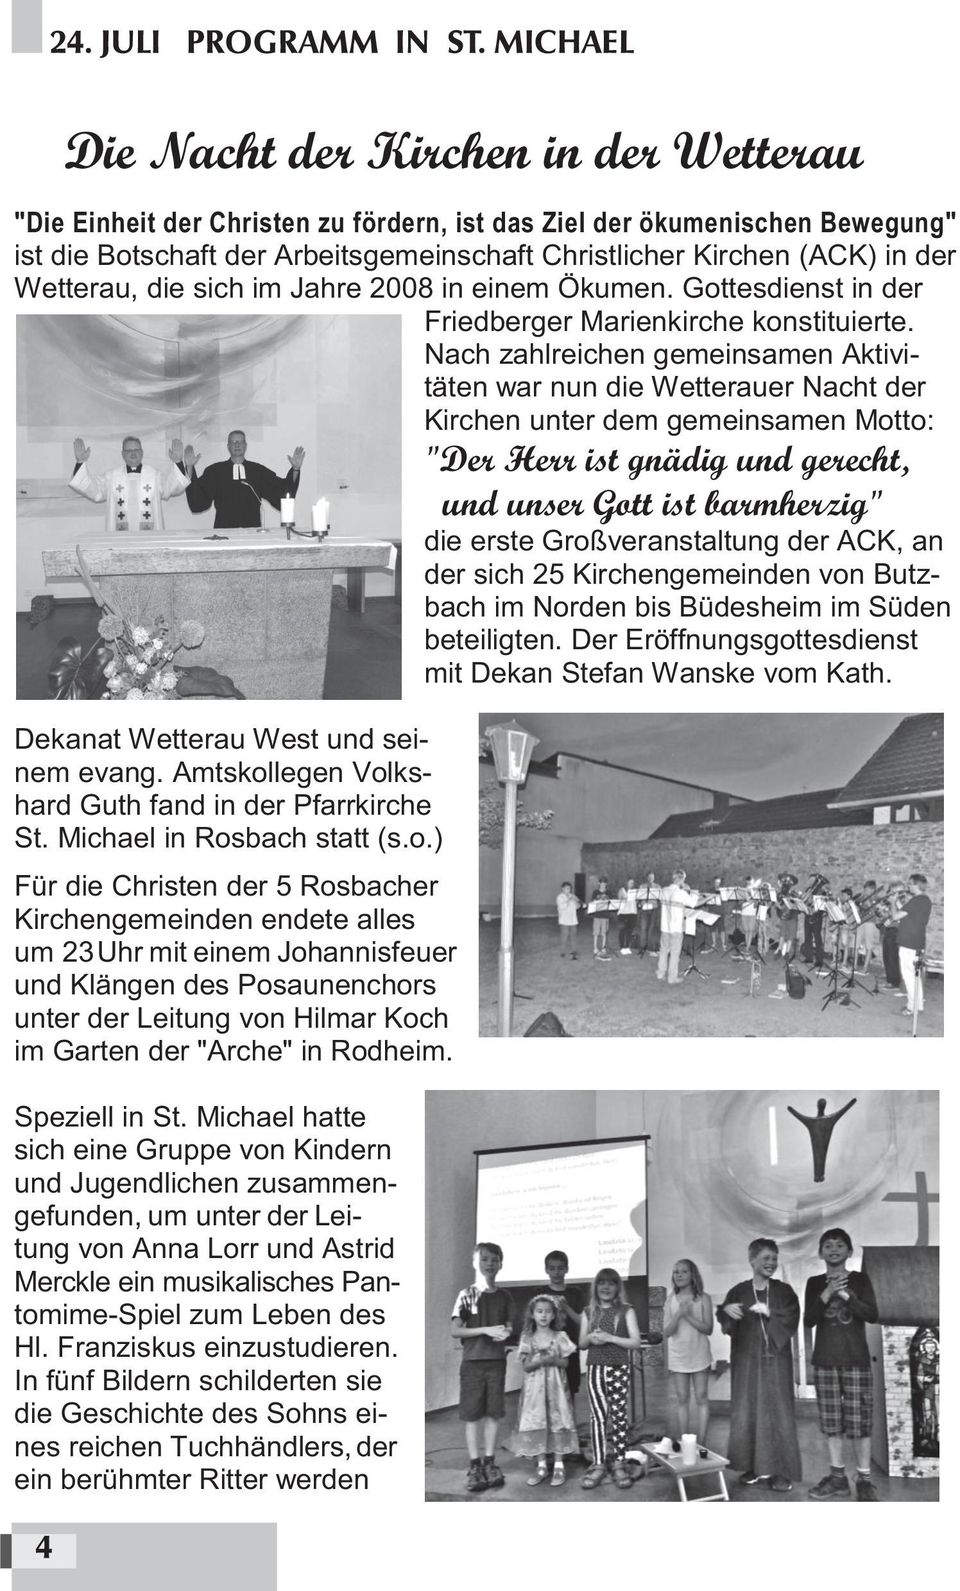 der Wetterau, die sich im Jahre 2008 in einem Ökumen. Gottesdienst in der Friedberger Marienkirche konstituierte.